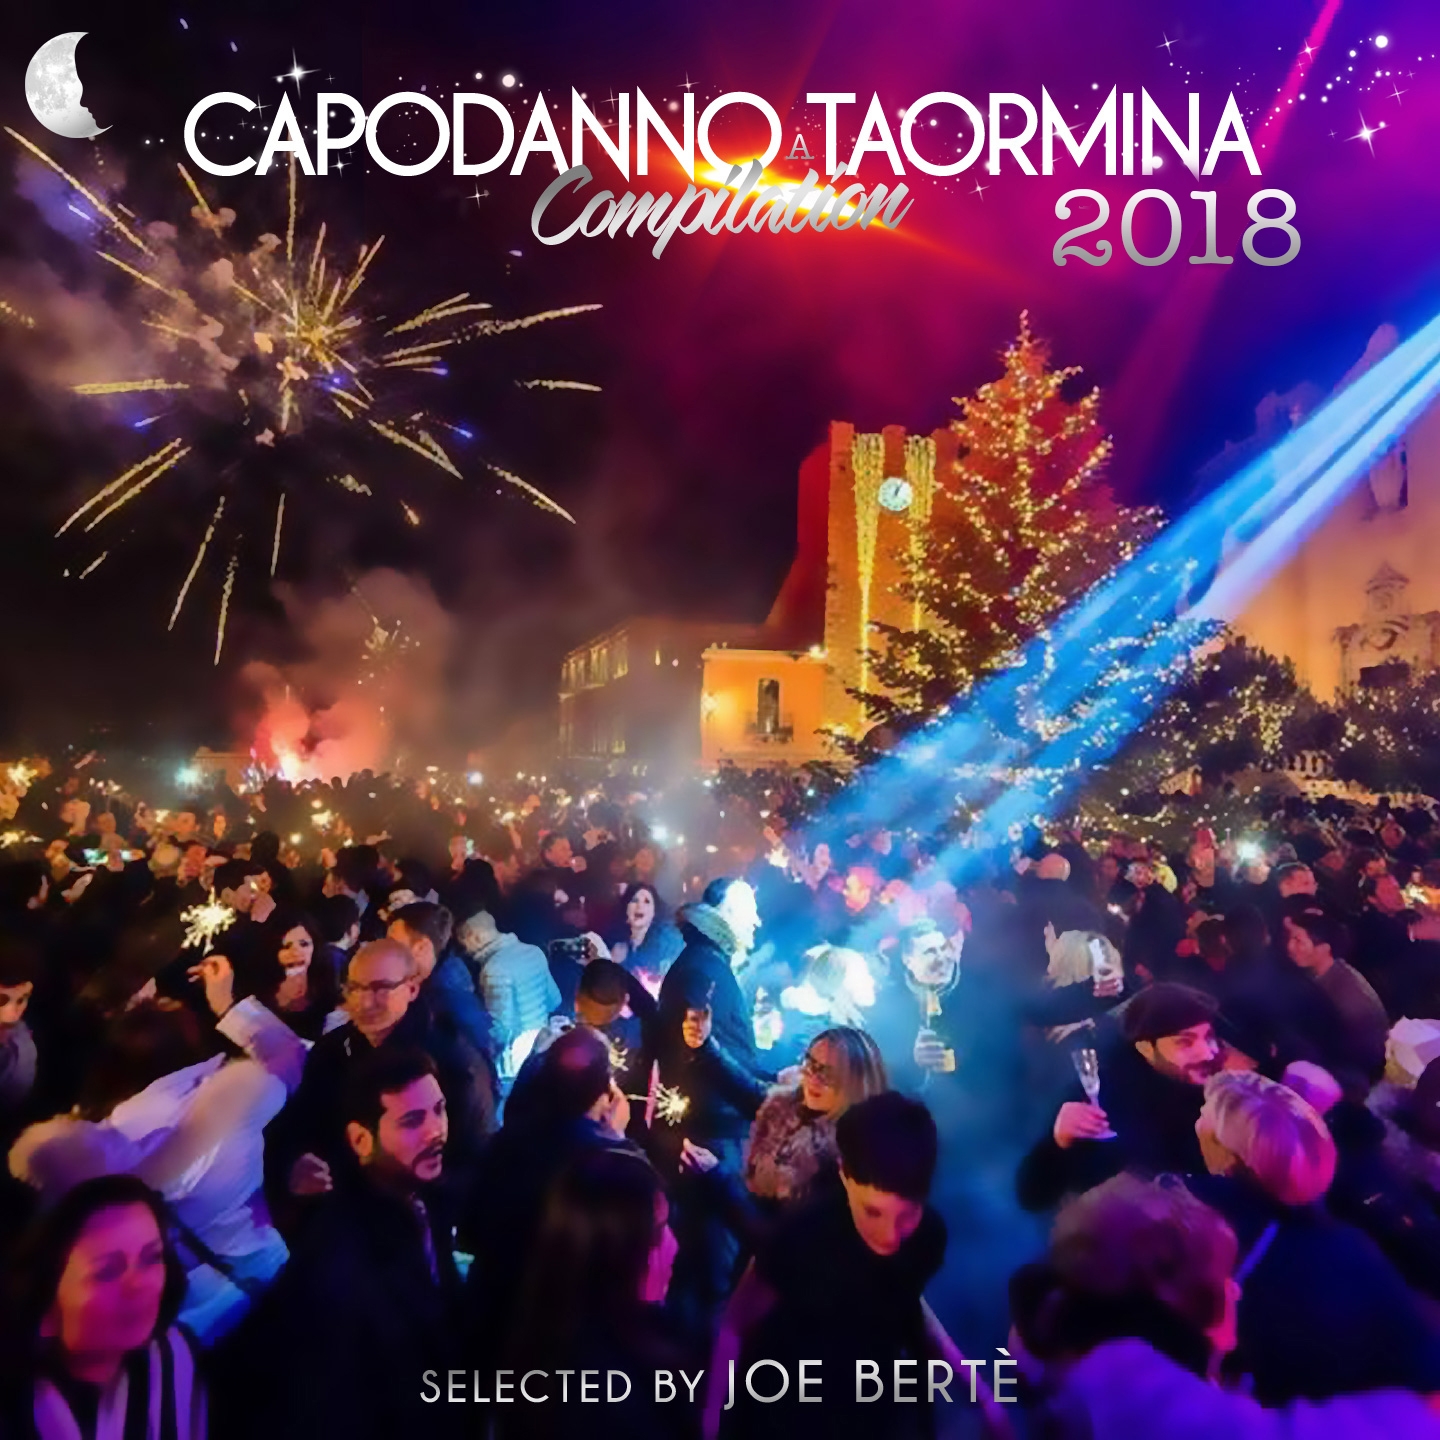 Capodanno a Taormina 2018 Compilation (Continuous DJ Mix)